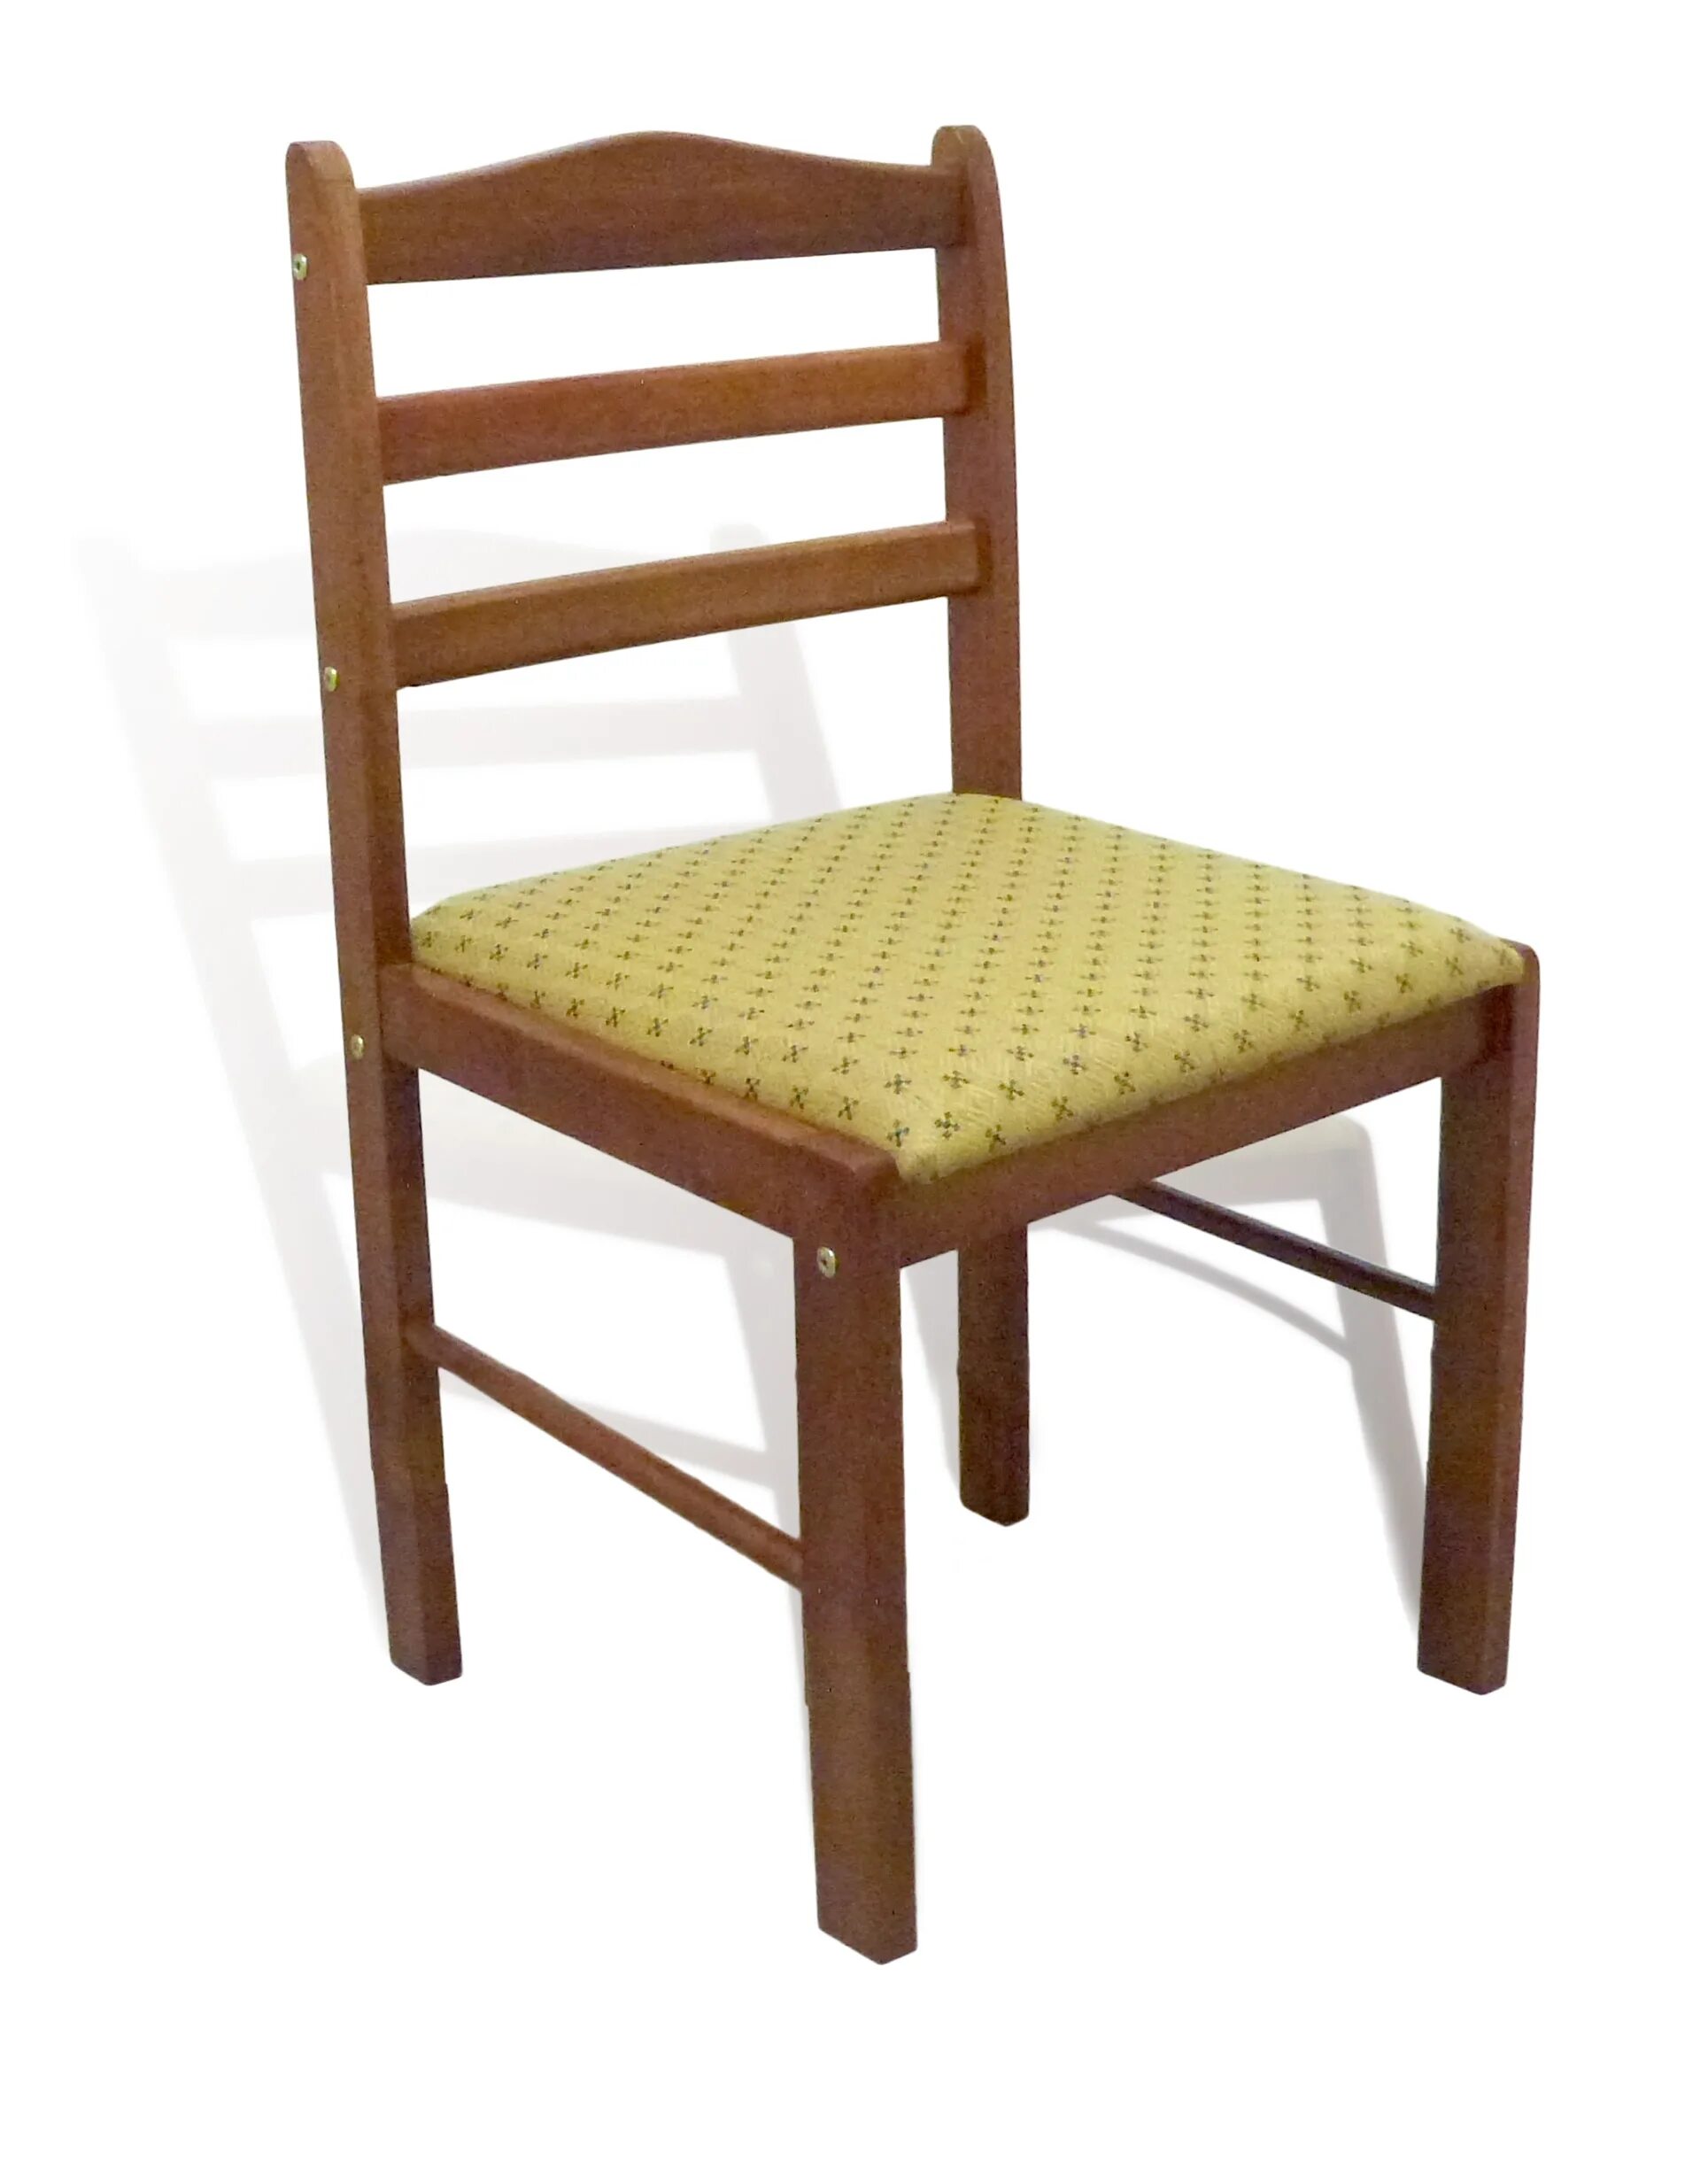 Где купить недорогой стул. Стул мягкий Мебельторг 2511. Стул пр. би-934.07а. Стул деревянный. Стул дерево.